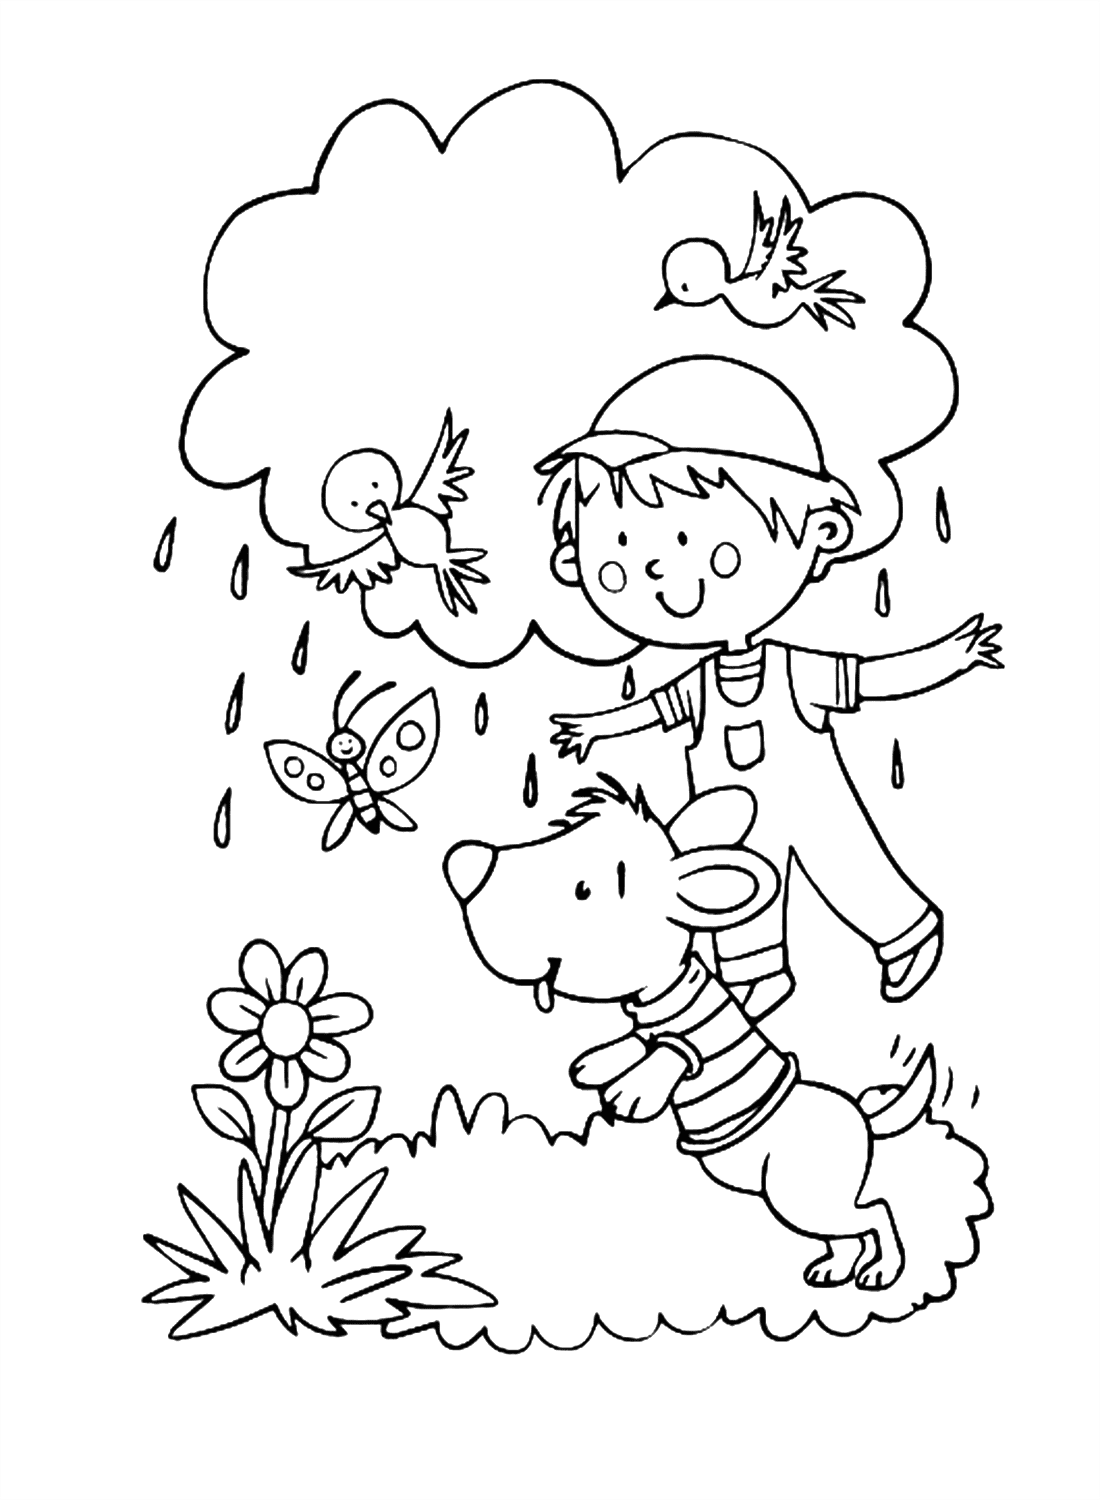 Um menino e um cachorro brincando lá fora na primavera